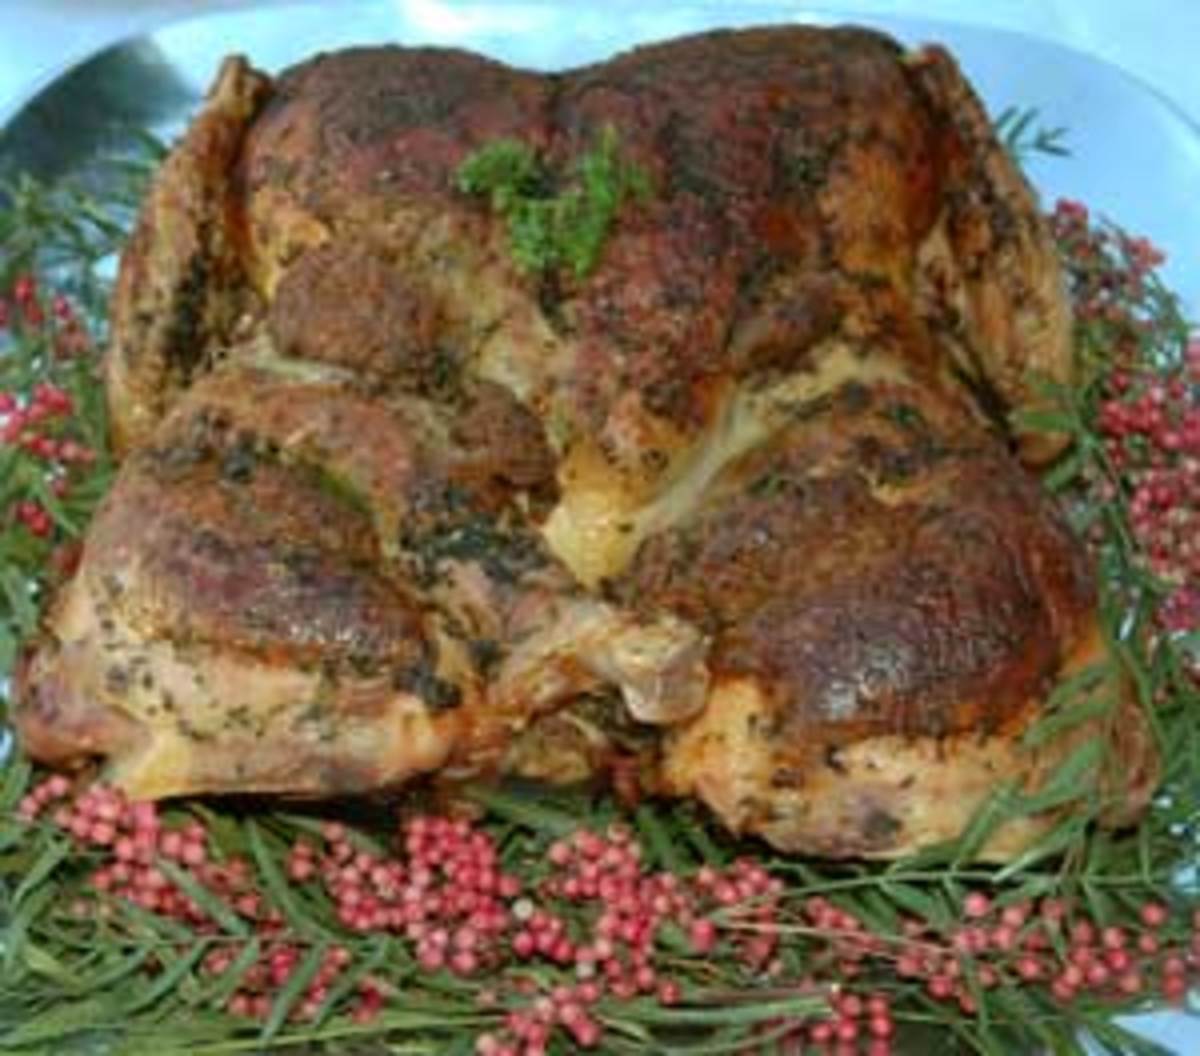 roasted-split-organic-turkey1